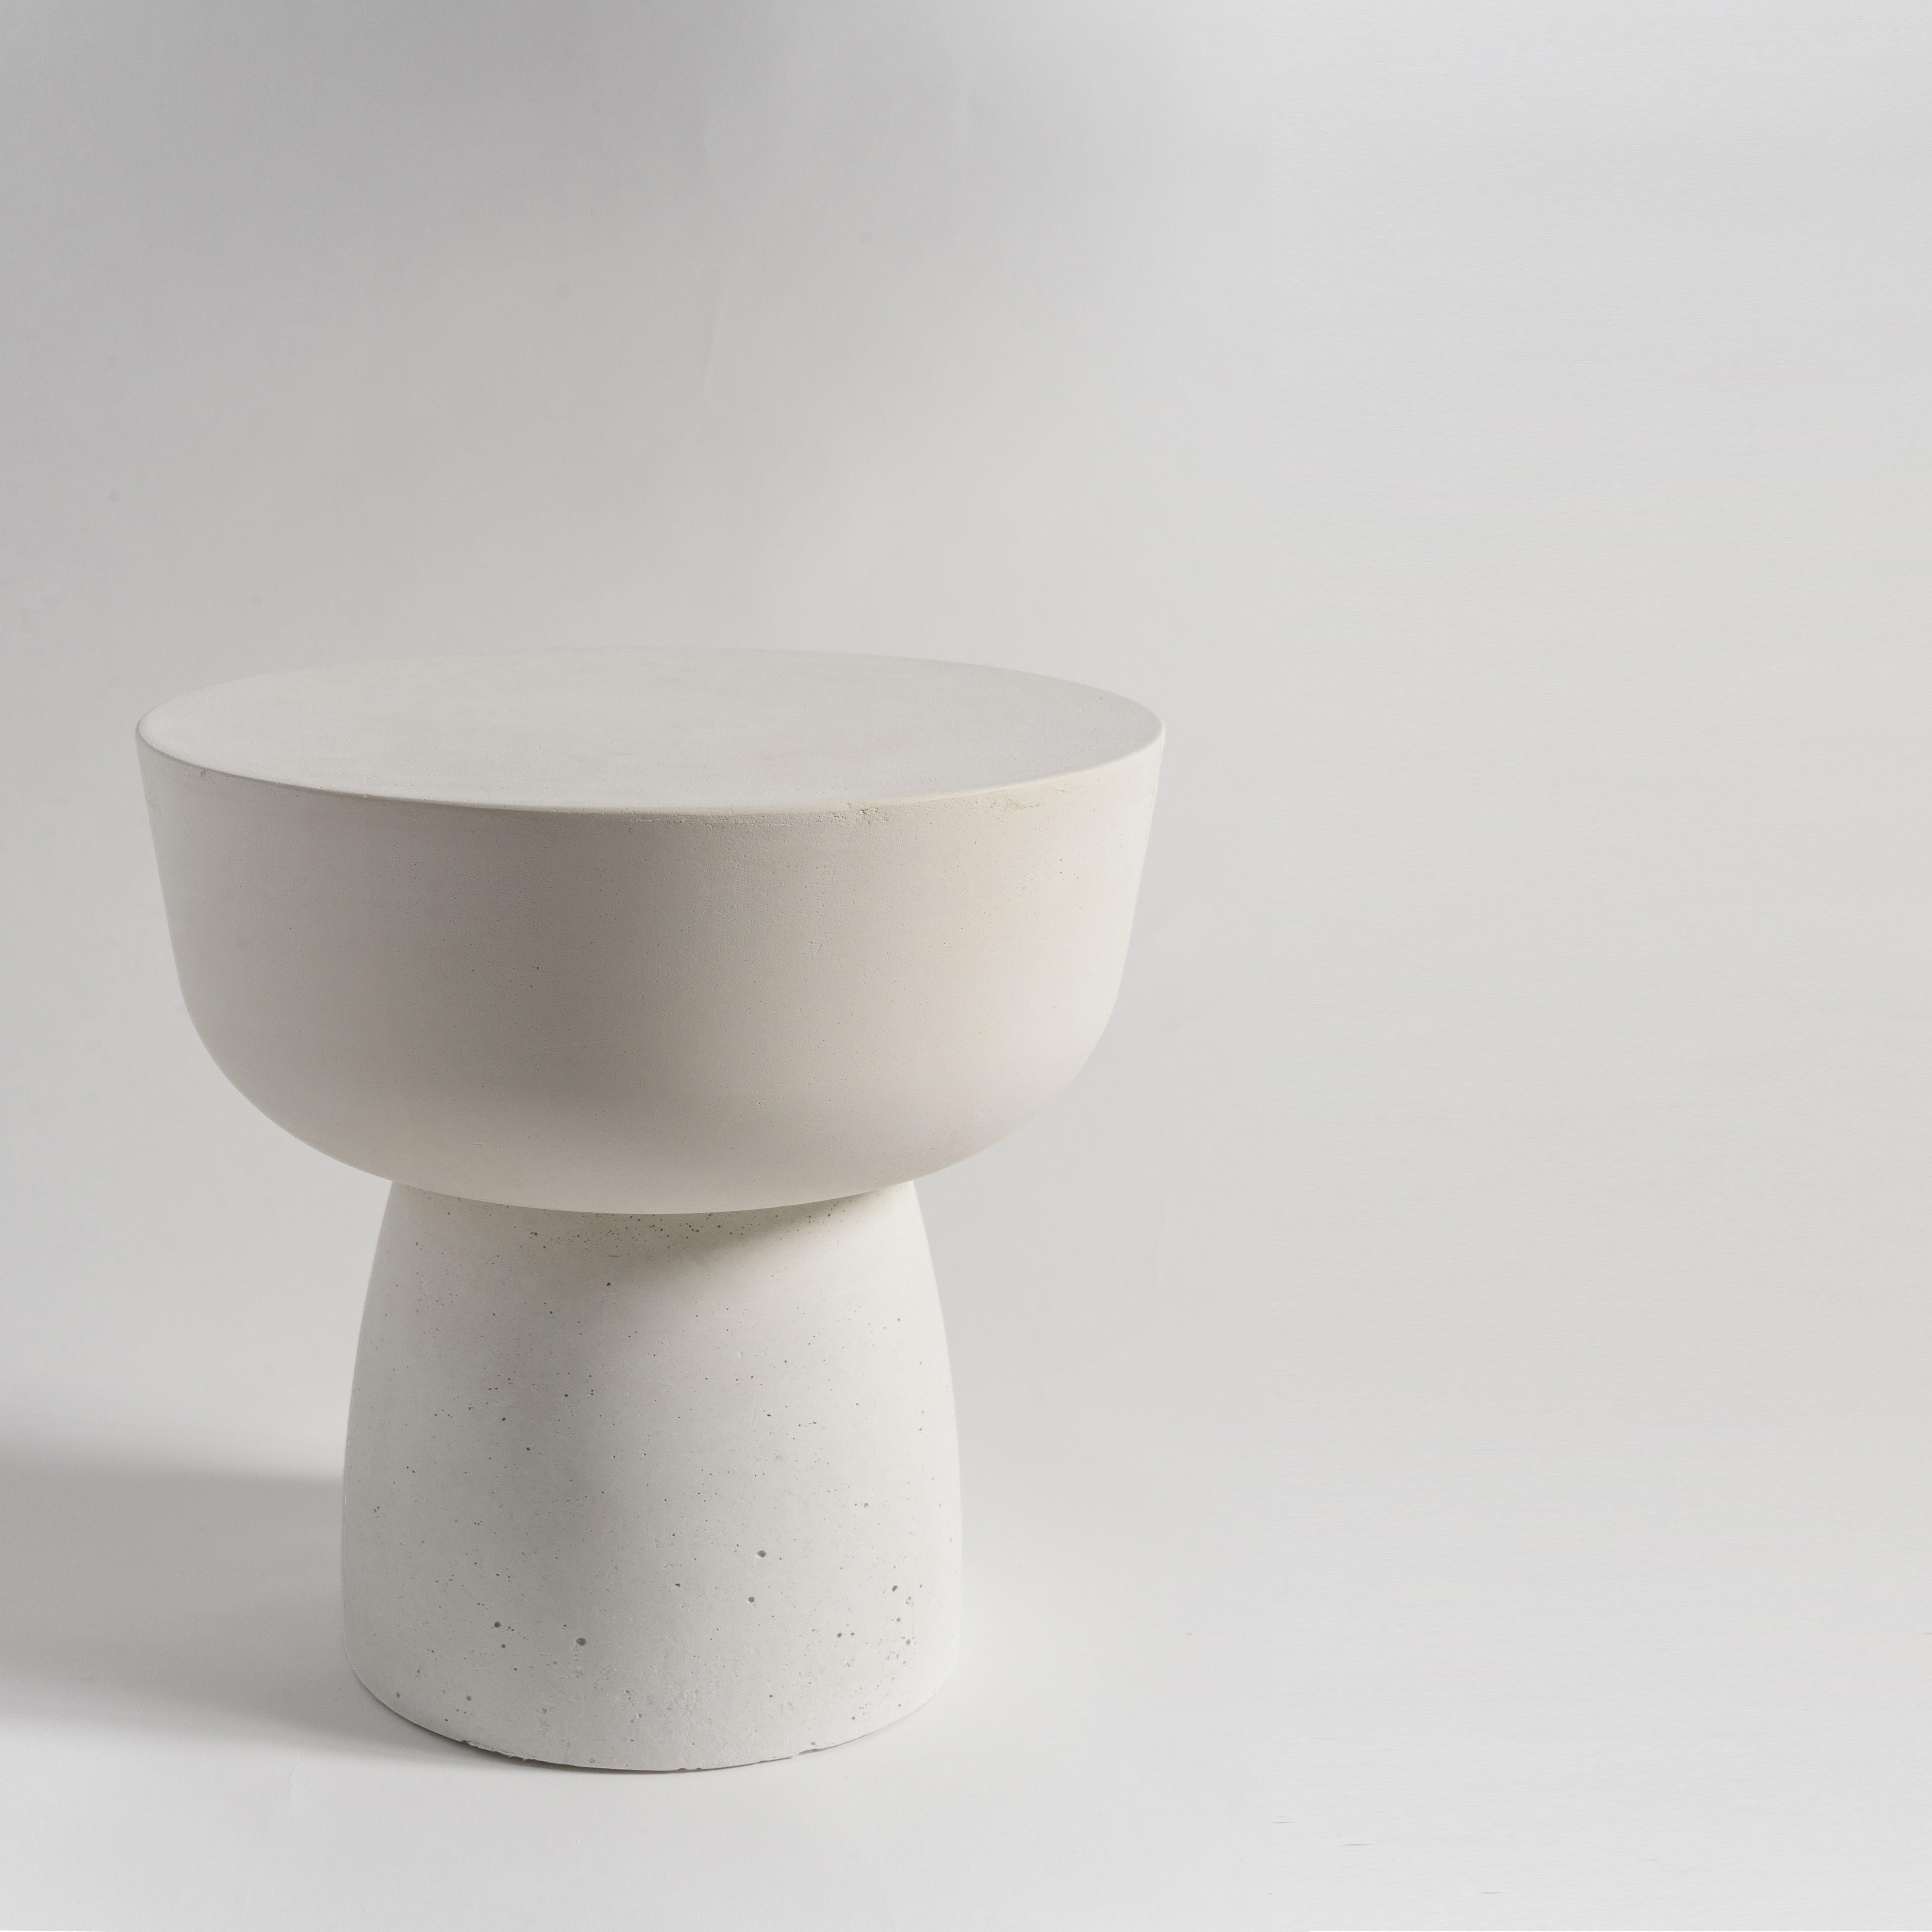 Europäischer skulpturaler Tisch des 21. Jahrhunderts 'MUSHROOM SOLID' aus weißem Kunststein - Größe TALL.

Der Tisch 'Mushroom Solid' gehört zu unserer Kollektion von Objekten aus einem einzigen Material. Ein eher skulpturales Möbelstück, das mit